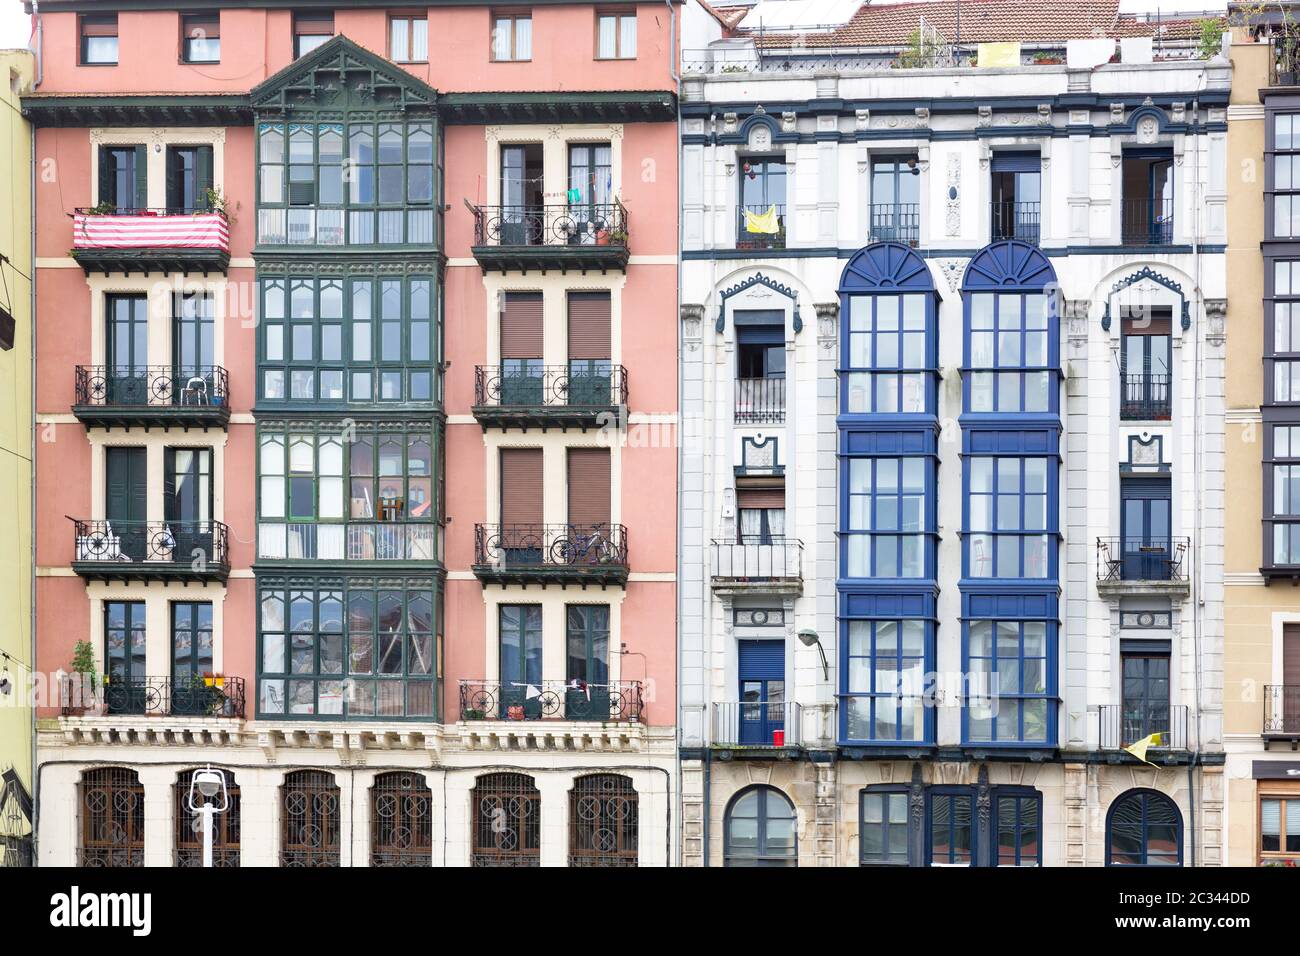 Façades typiques de maisons résidentielles à Bilbao, Espagne Banque D'Images